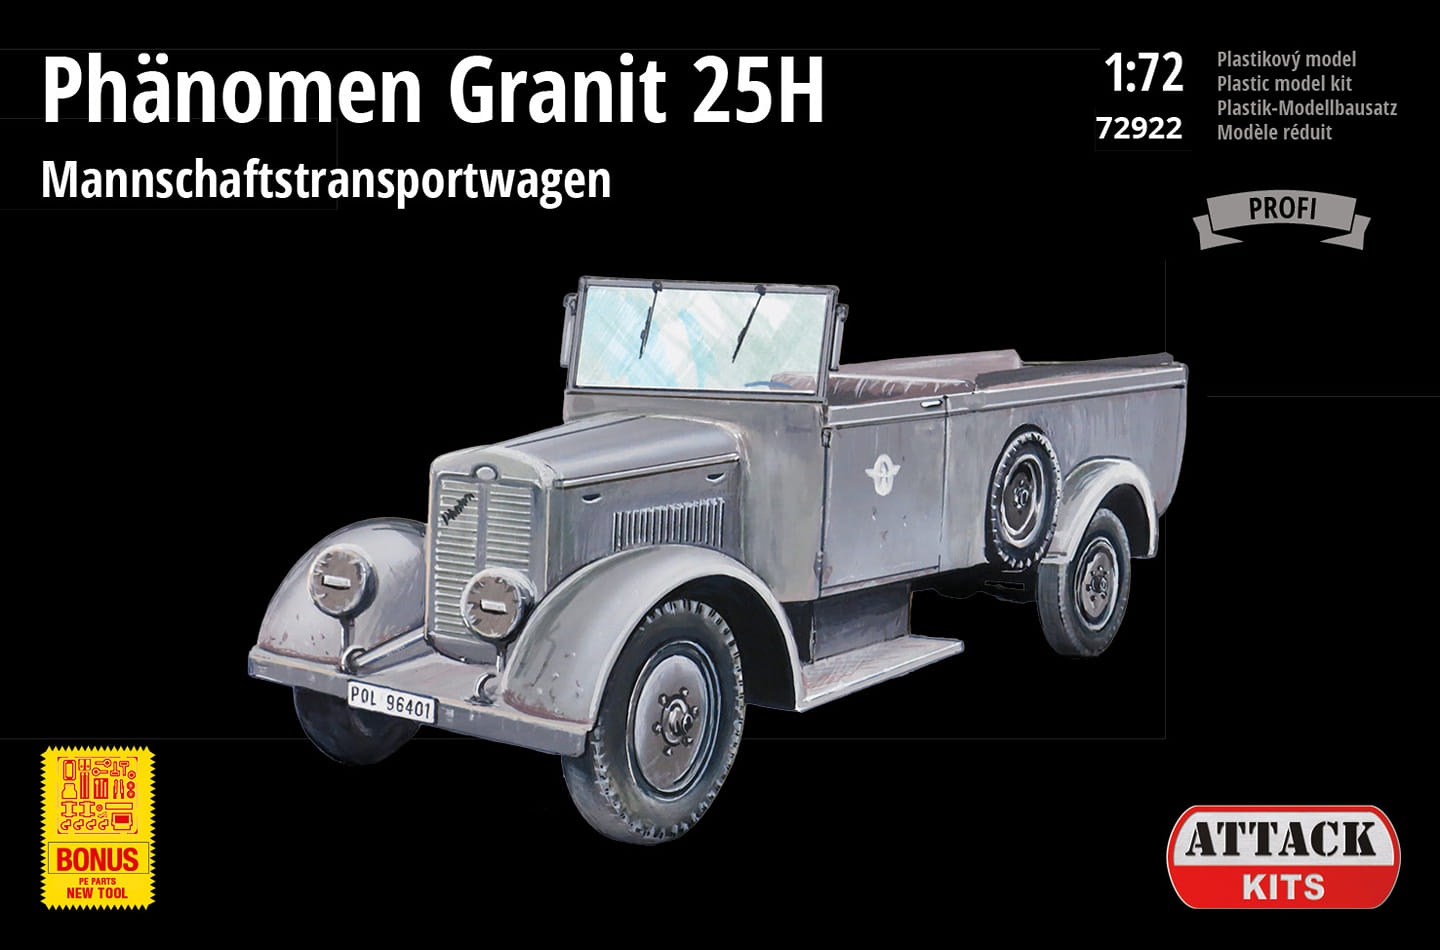 Phnomen Granit 25H Mannschaftstransportwagen